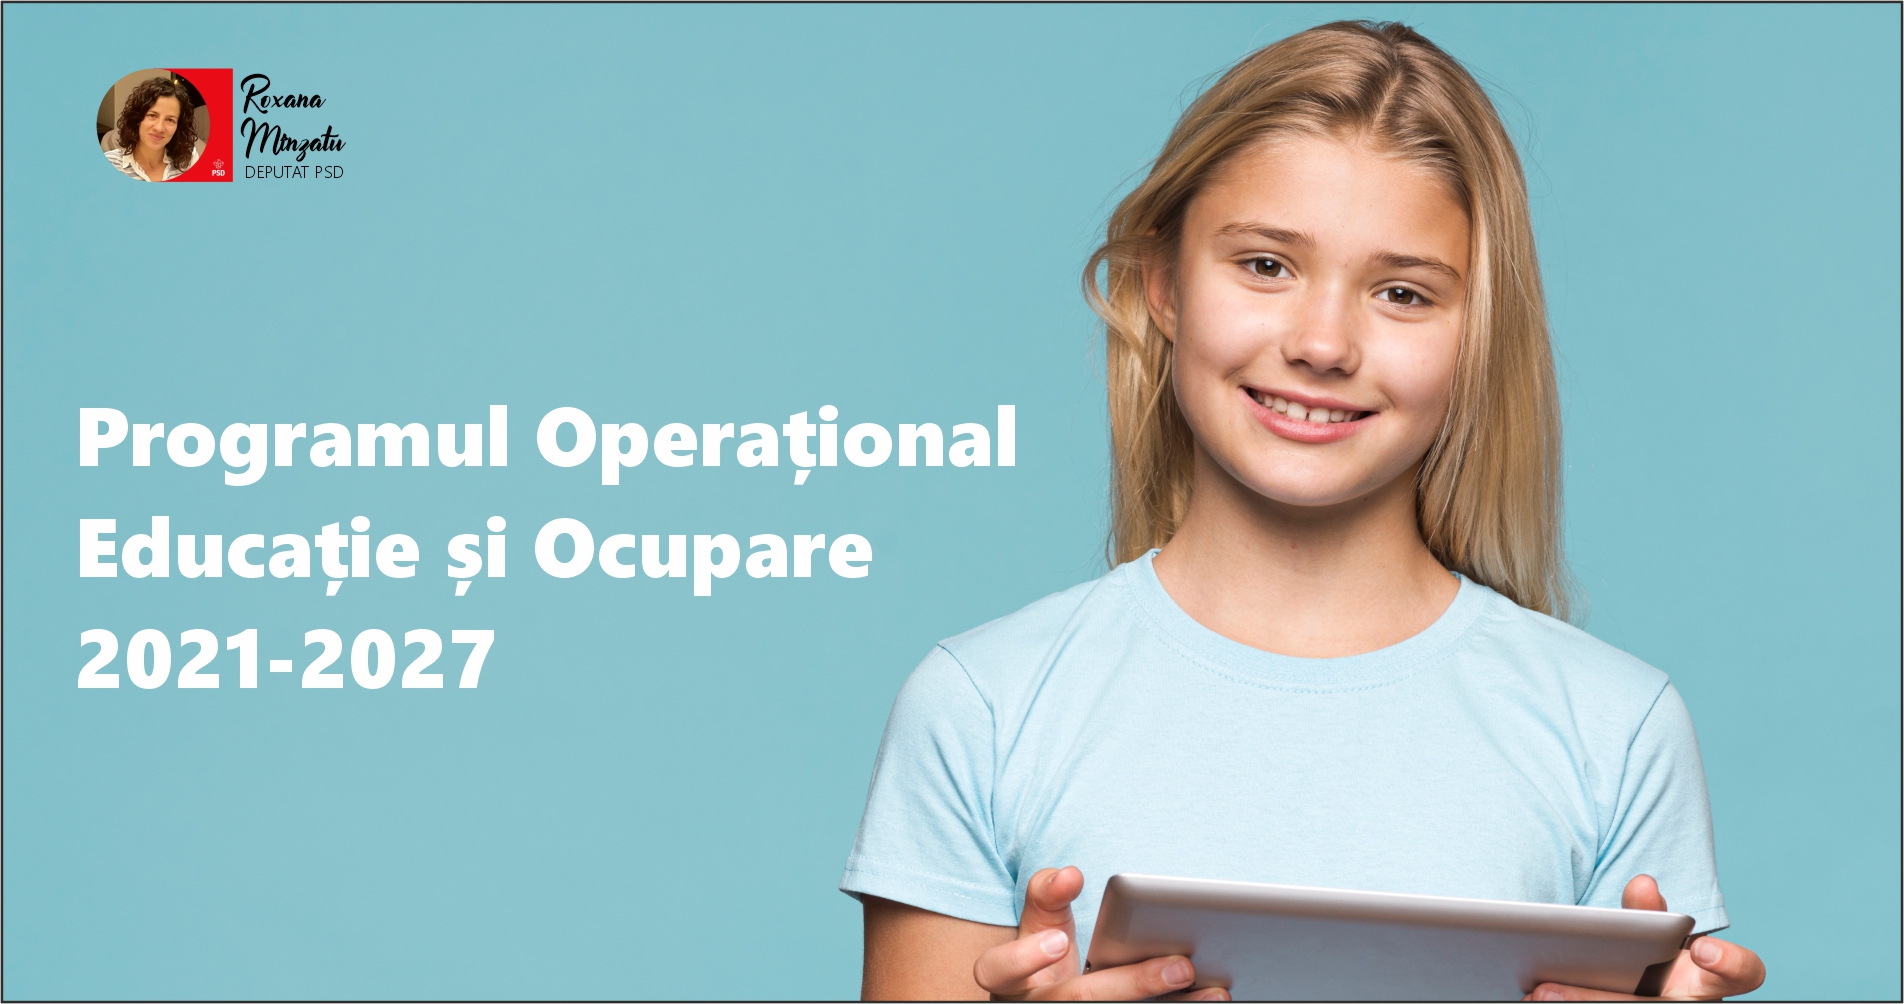 Sinteză - Programul Operațional Educație și Ocupare 2021-2027